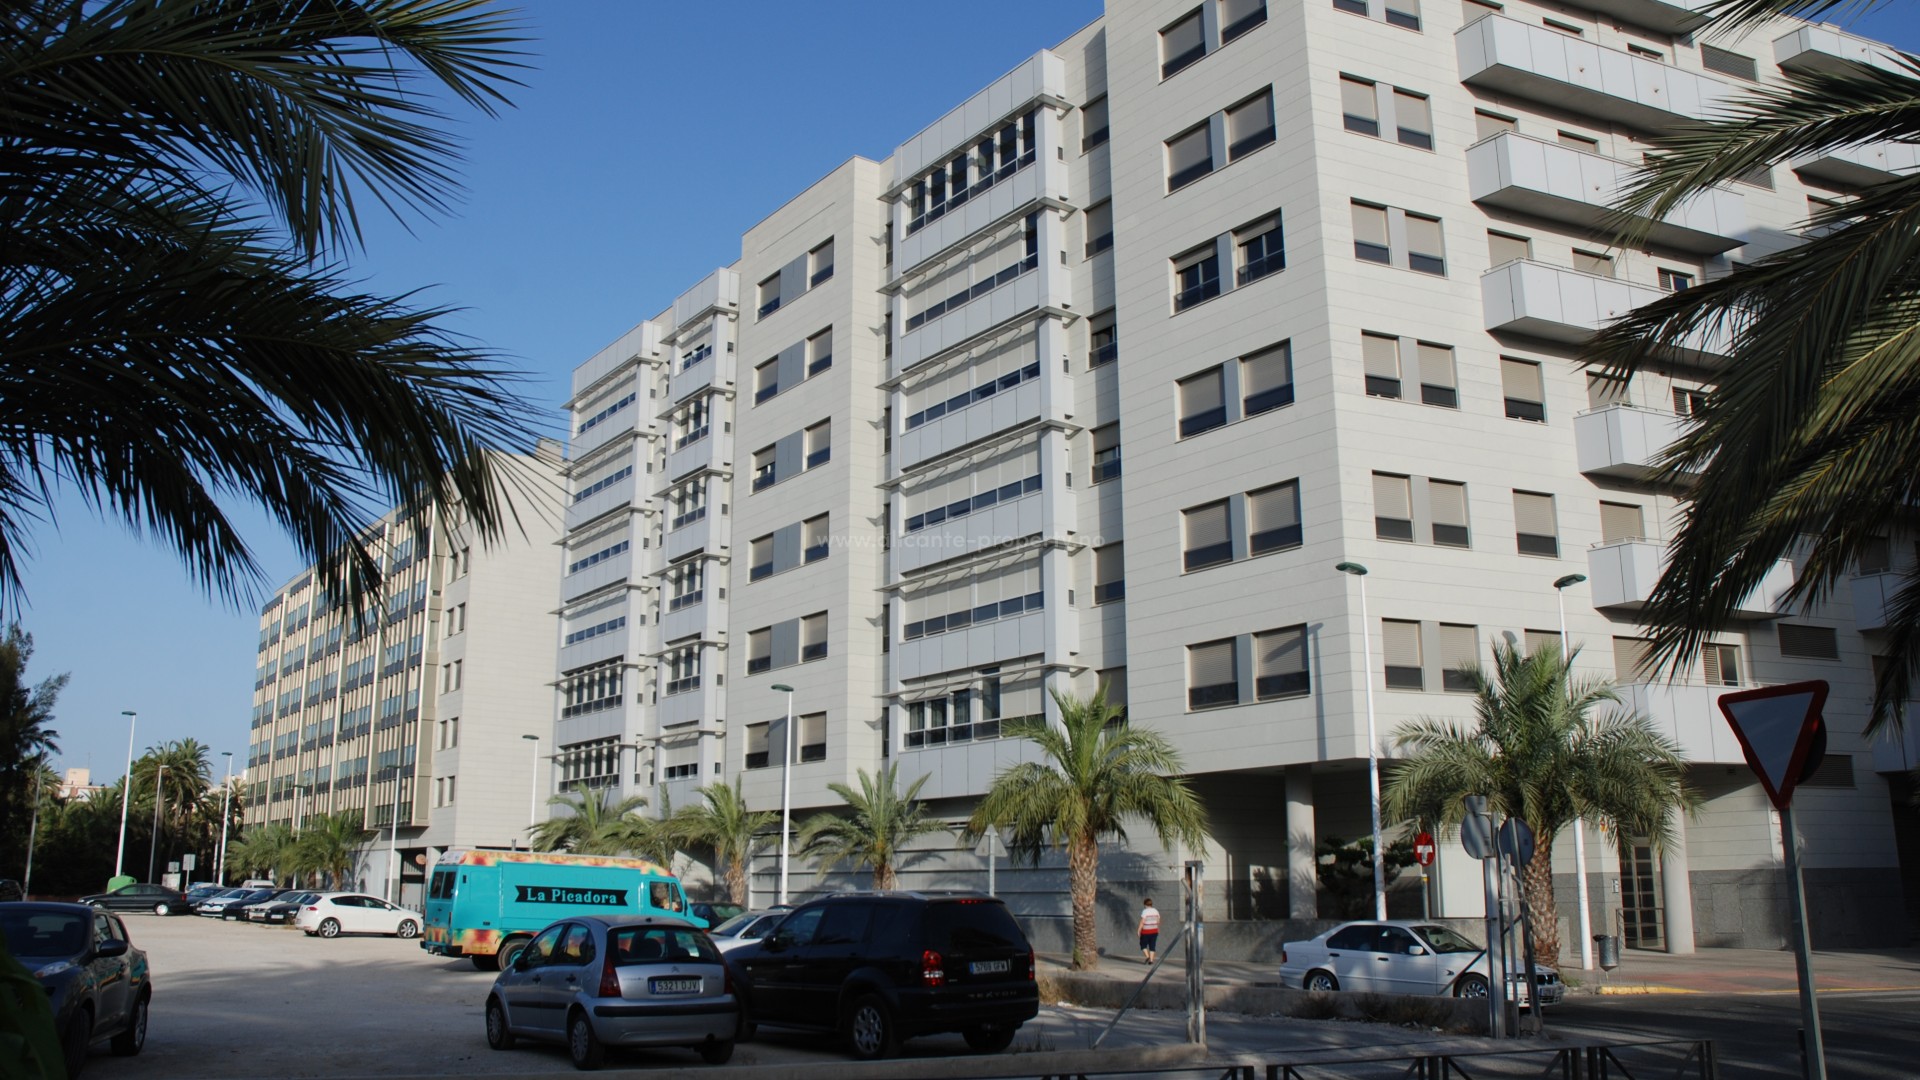 Mange leiligheter i sentrum av Elche by - Elche er Alicante-provinsen neste største by. Forskjellige størrelser med 4,3 og 2 soverom